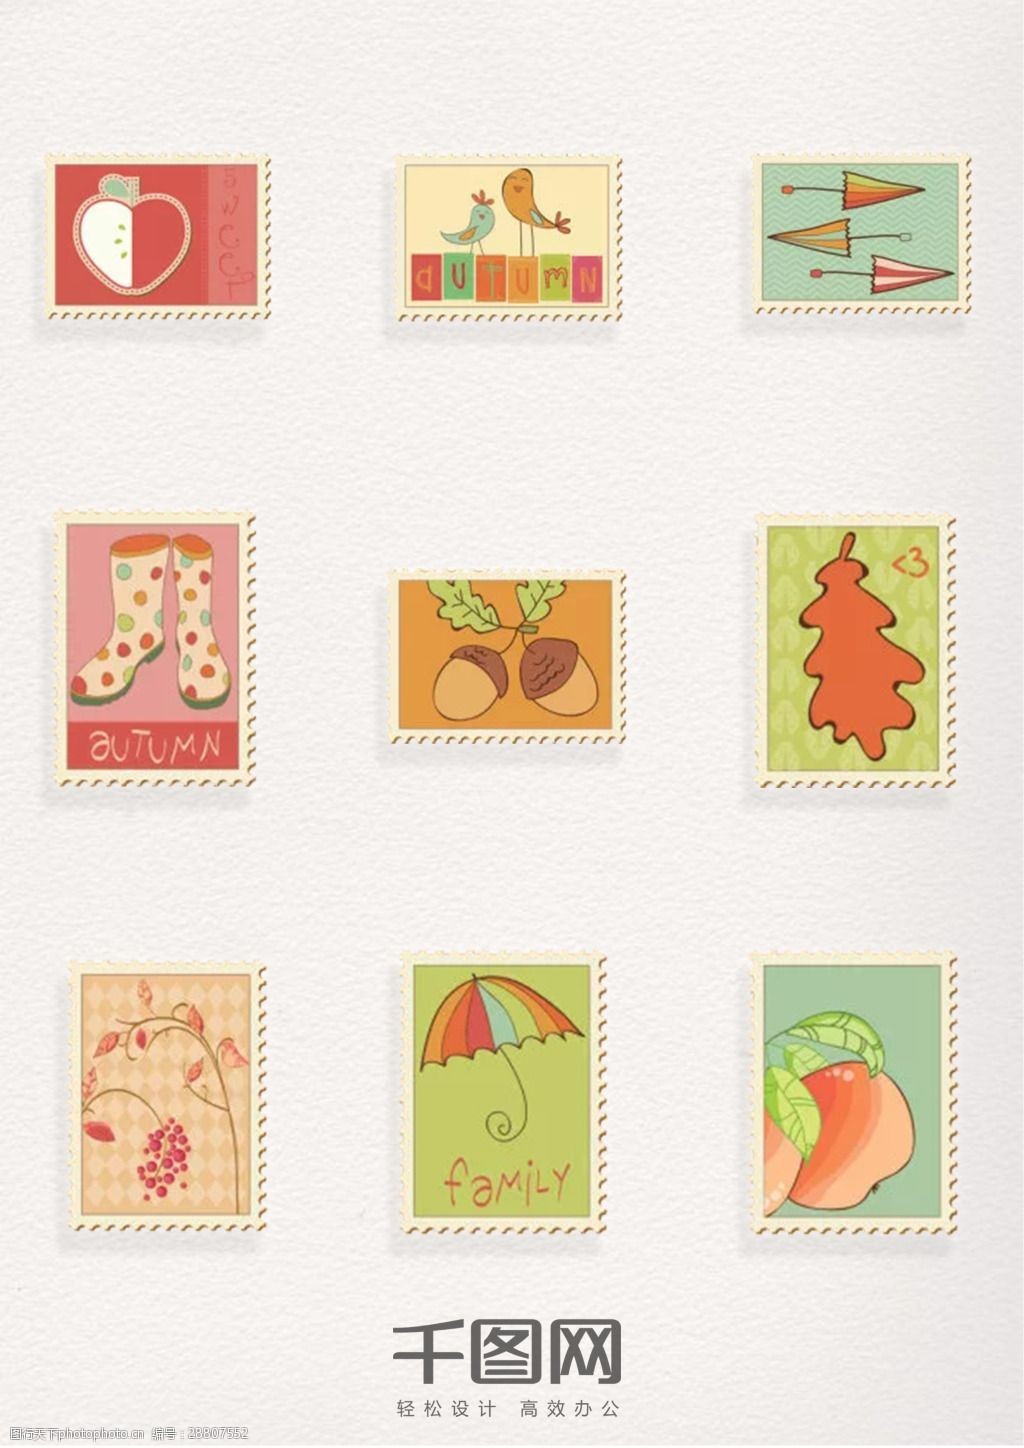 卡通邮票 邮票 卡通图案 插画 邮票元素 邮票图案 邮票装饰元素 彩色